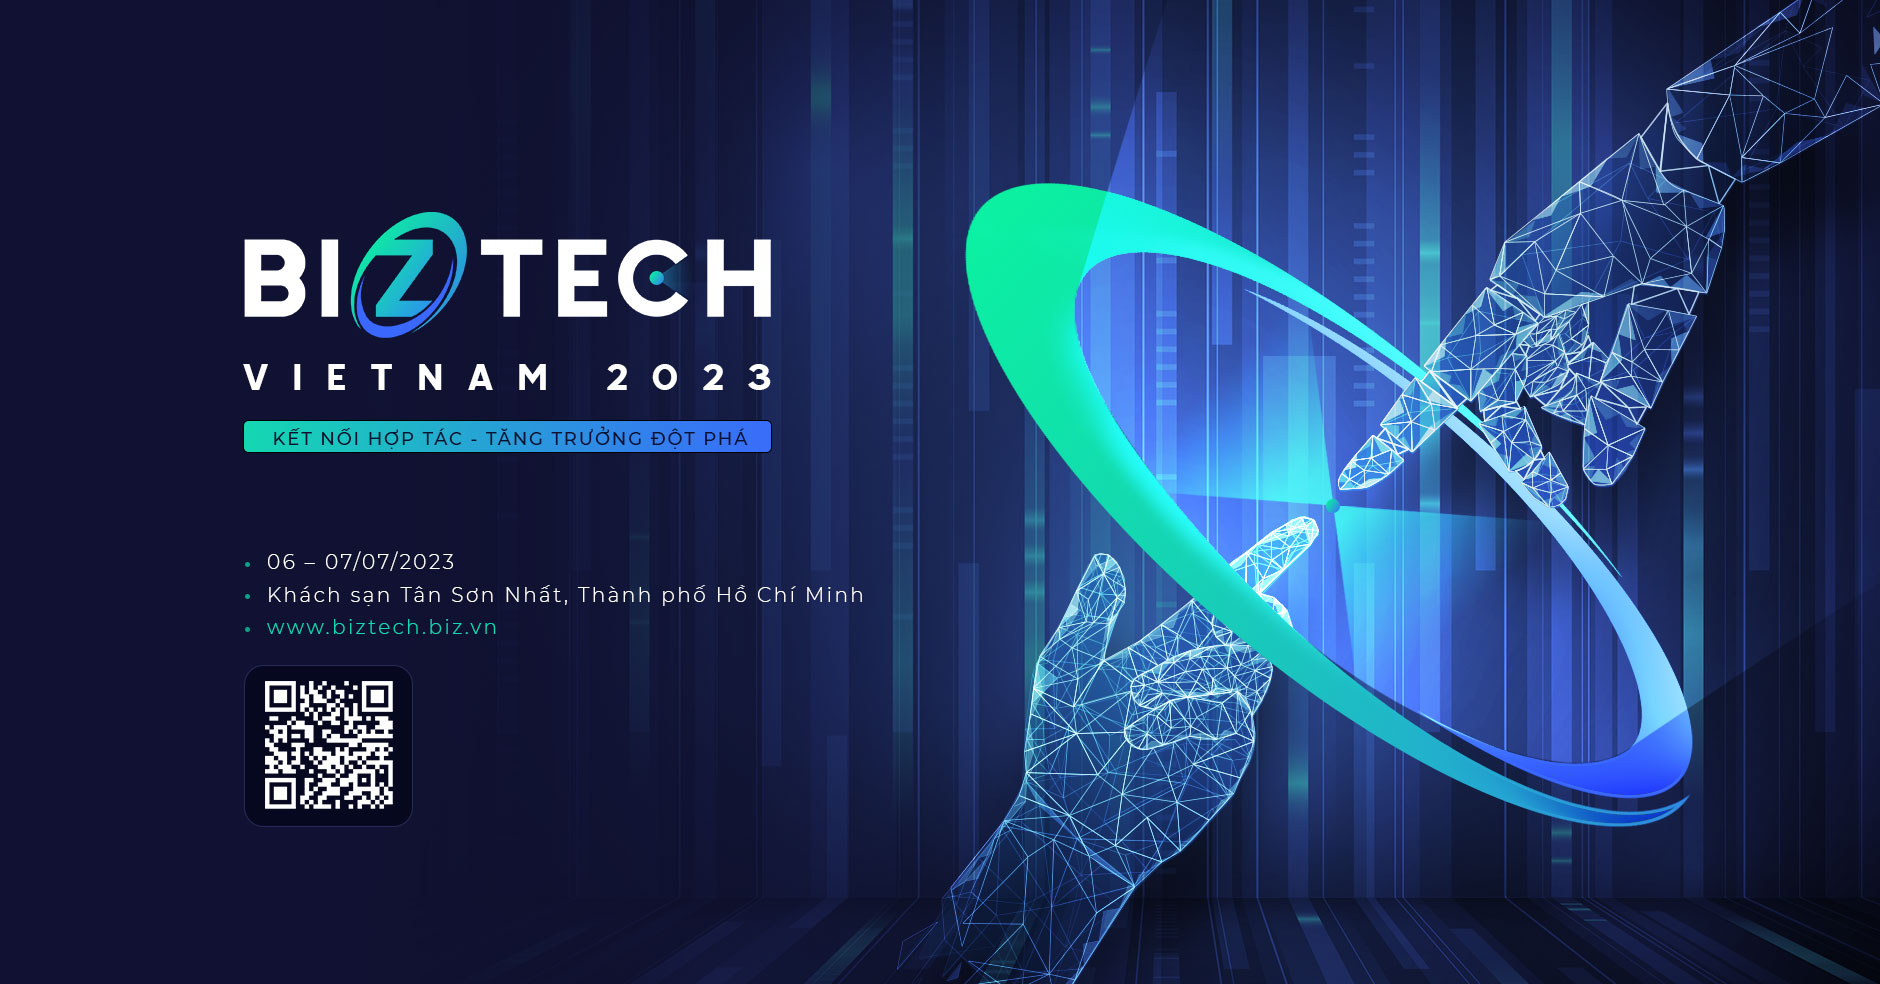 Mời tham gia chương trình Biztech Việt Nam 2023: "Kết nối hợp tác - Tăng trưởng đột phá"